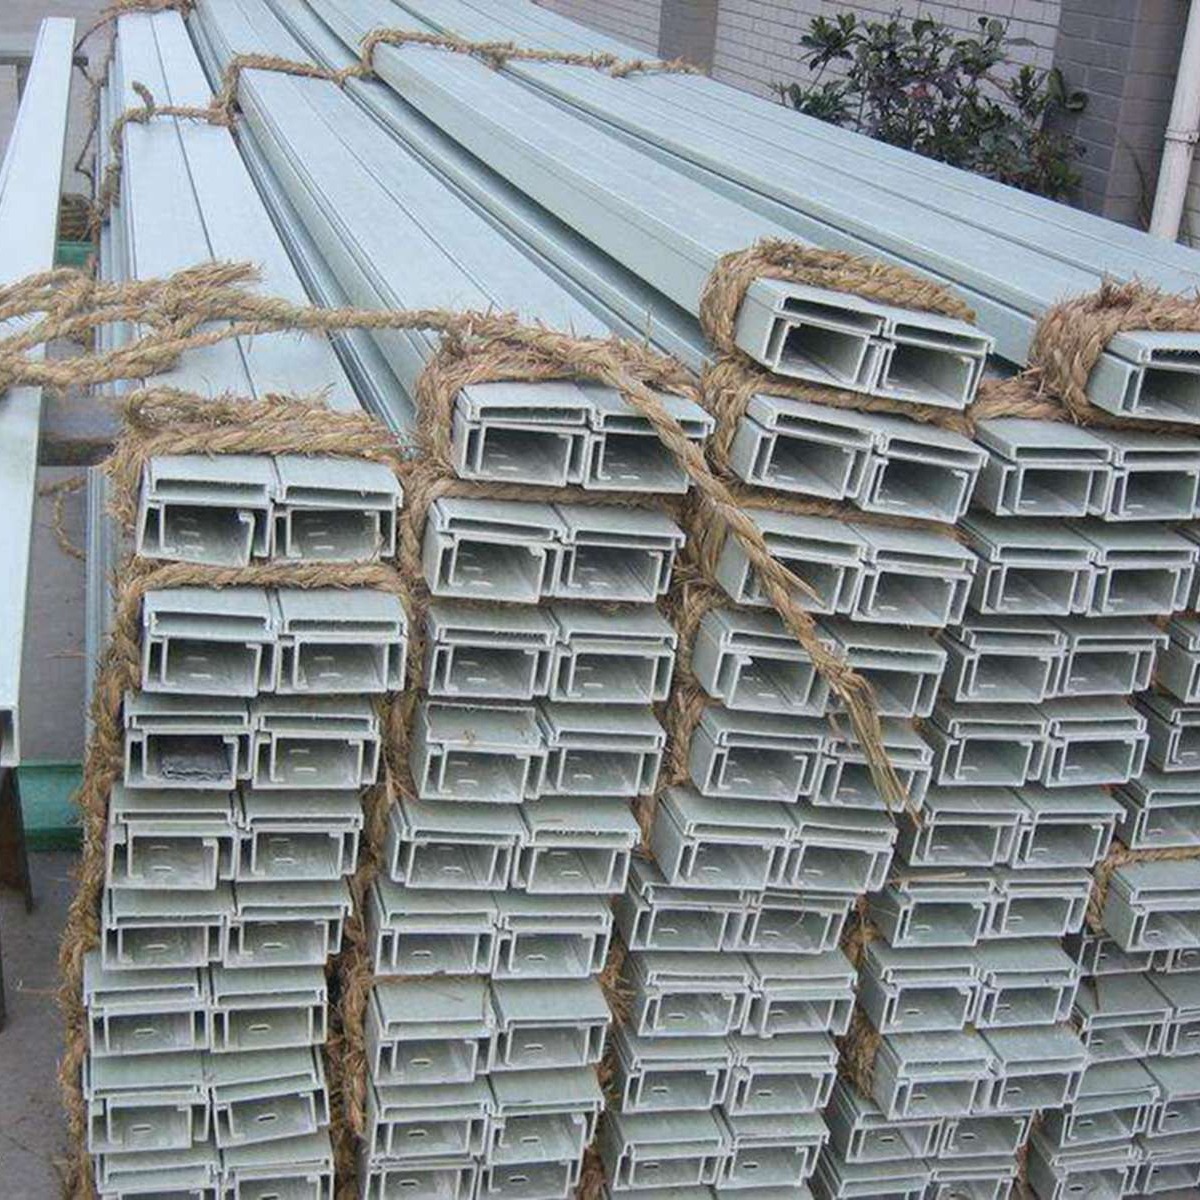 液动管缆玻璃钢电缆桥架 霈凯龙井10050mm电缆桥架生产